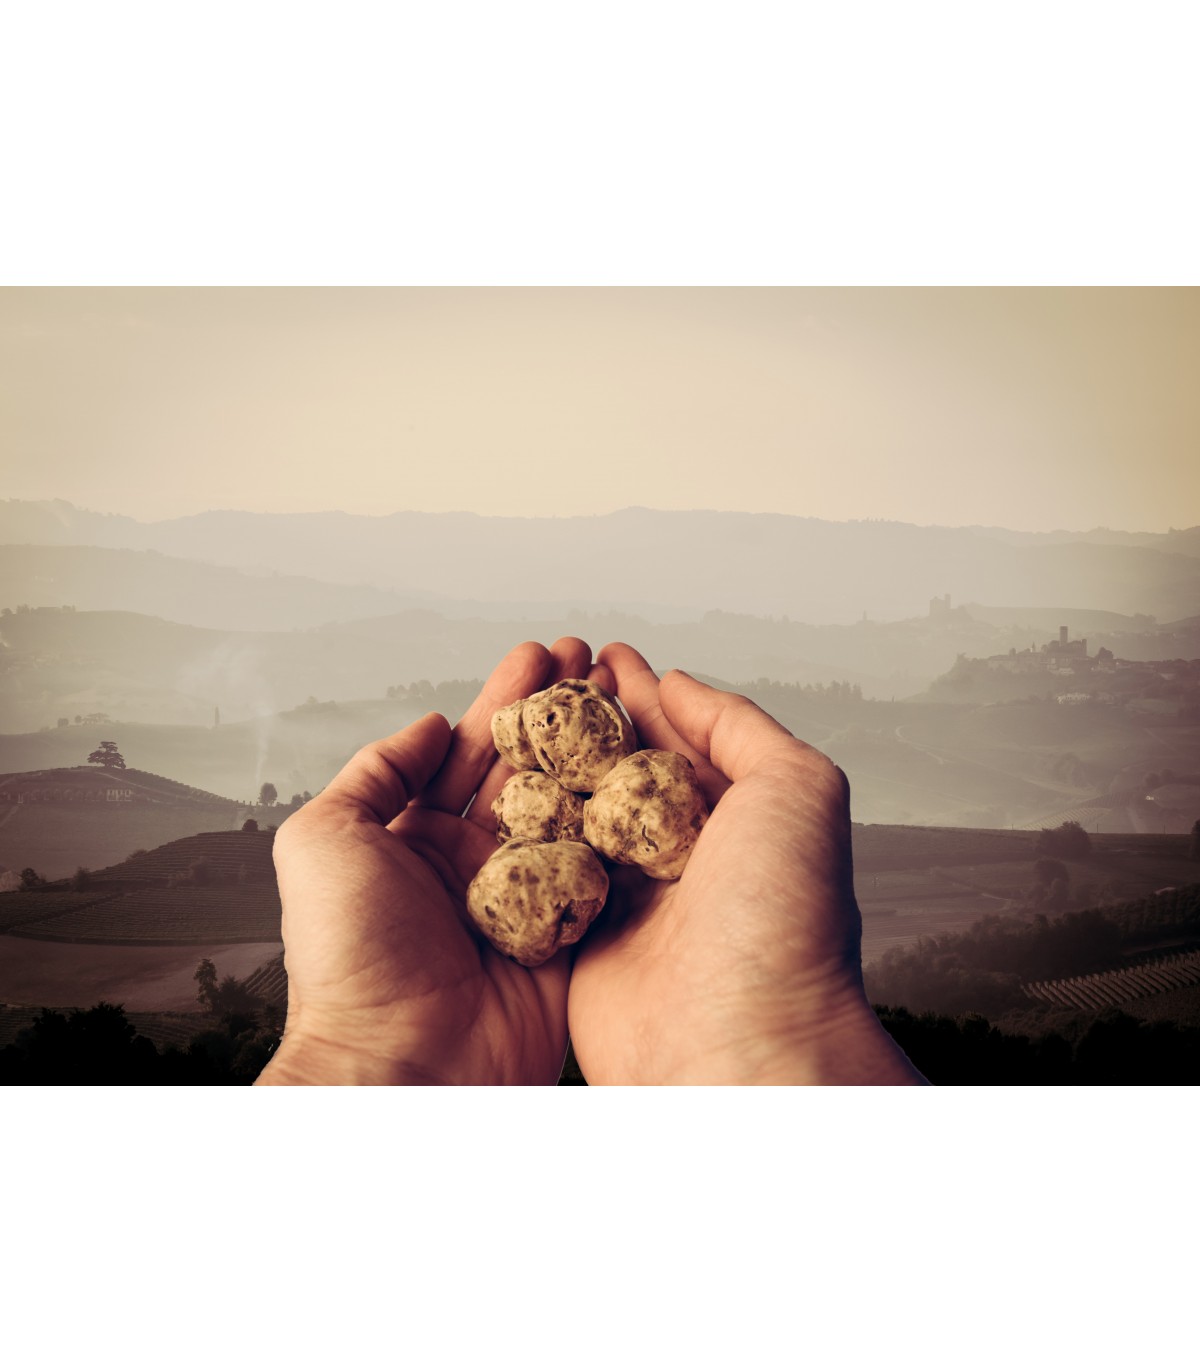 La truffe blanche du Piémont: Tuber magnatum